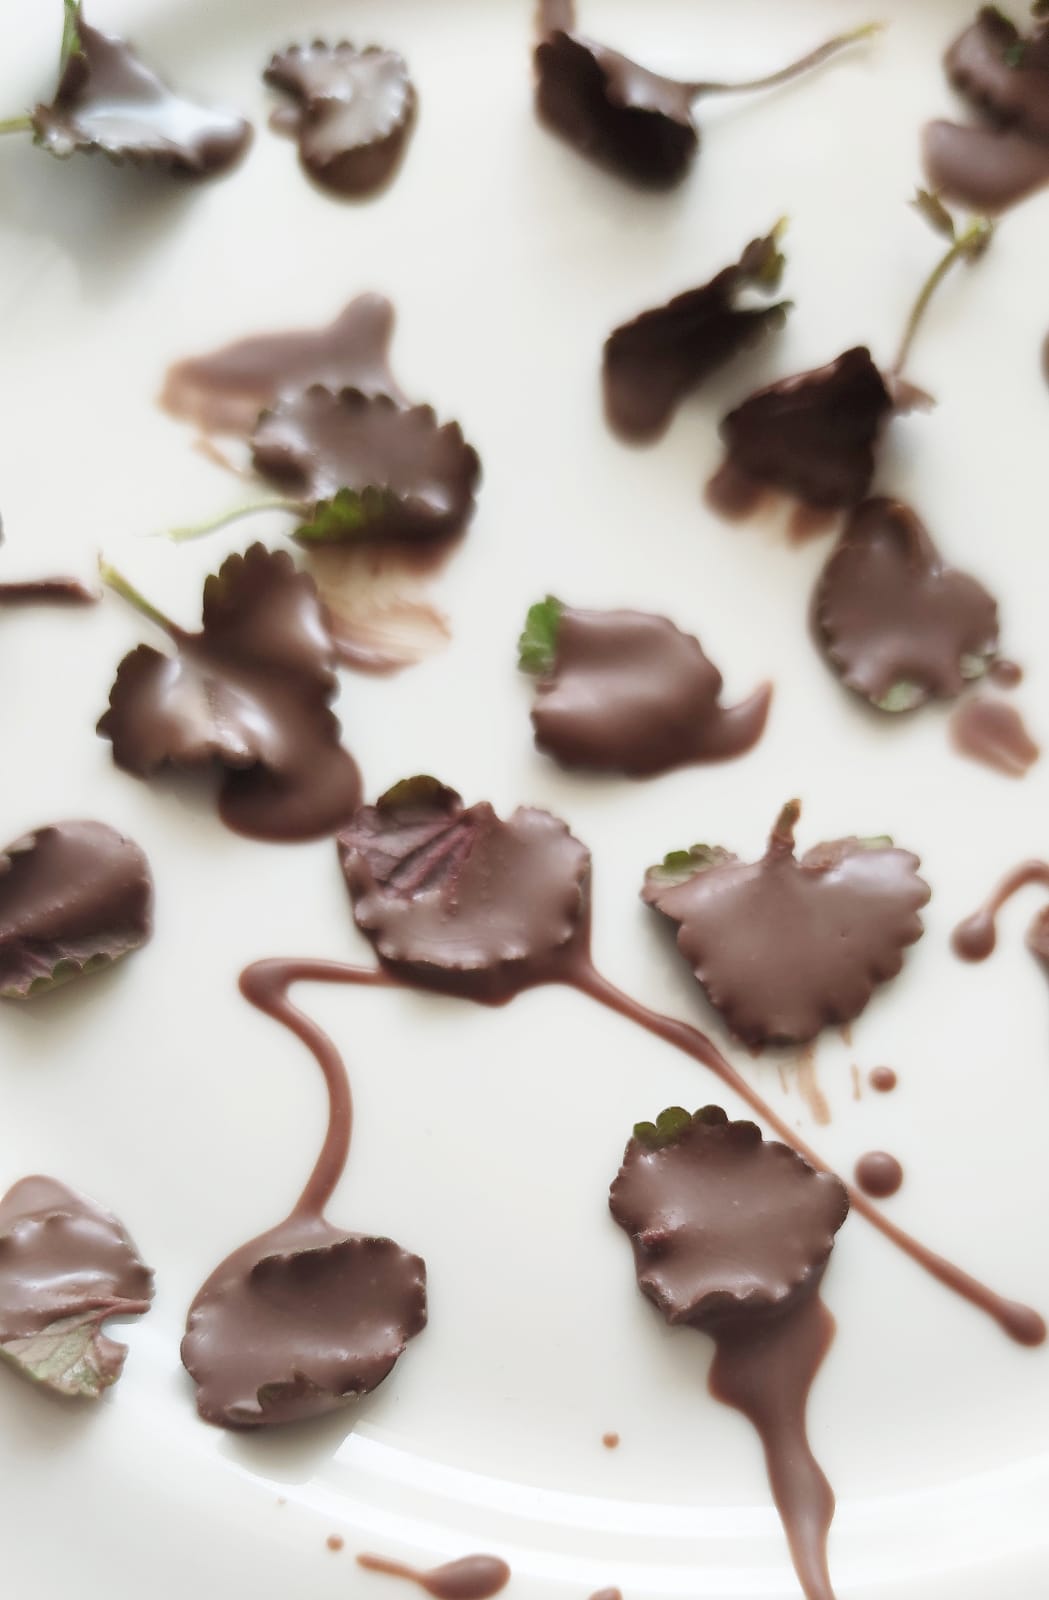 Bild zum Schritt 6 für das Bastel- und DIY-Abenteuer für Kinder: 'Legt die Schokoladen Blätter anschließend auf einen Teller und lasst...'